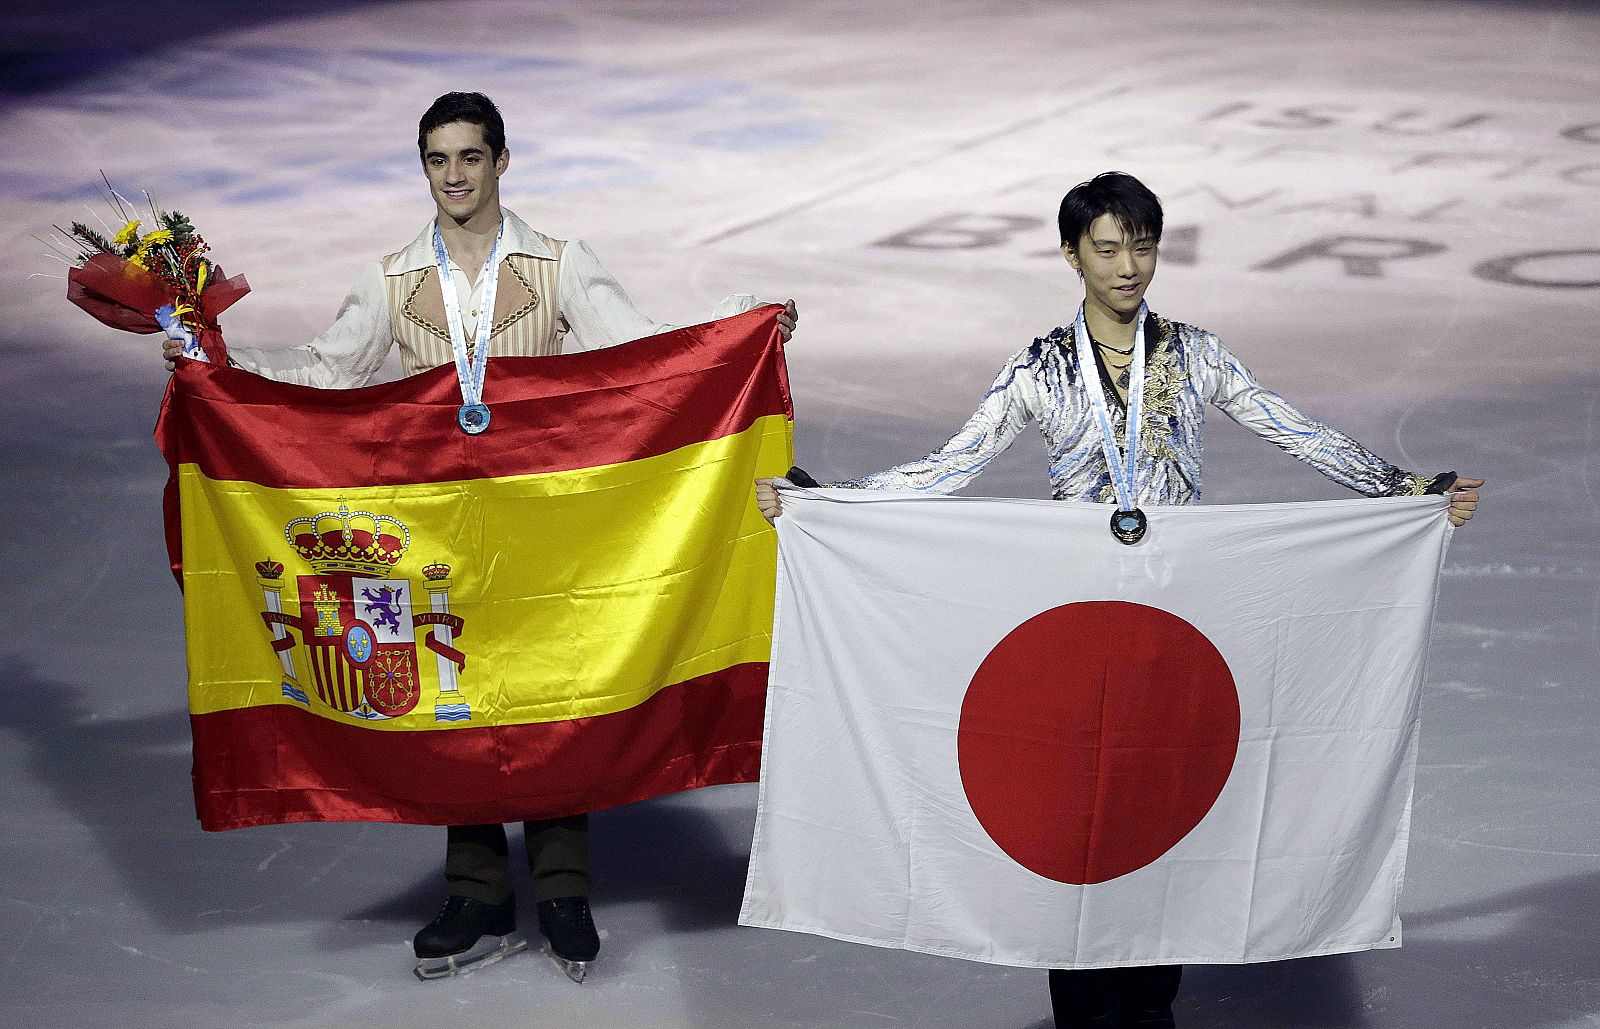 Javier Fernández y el japonés Yuzuru Hanyu tras conseguir las medallas de plata y oro el pasado año.